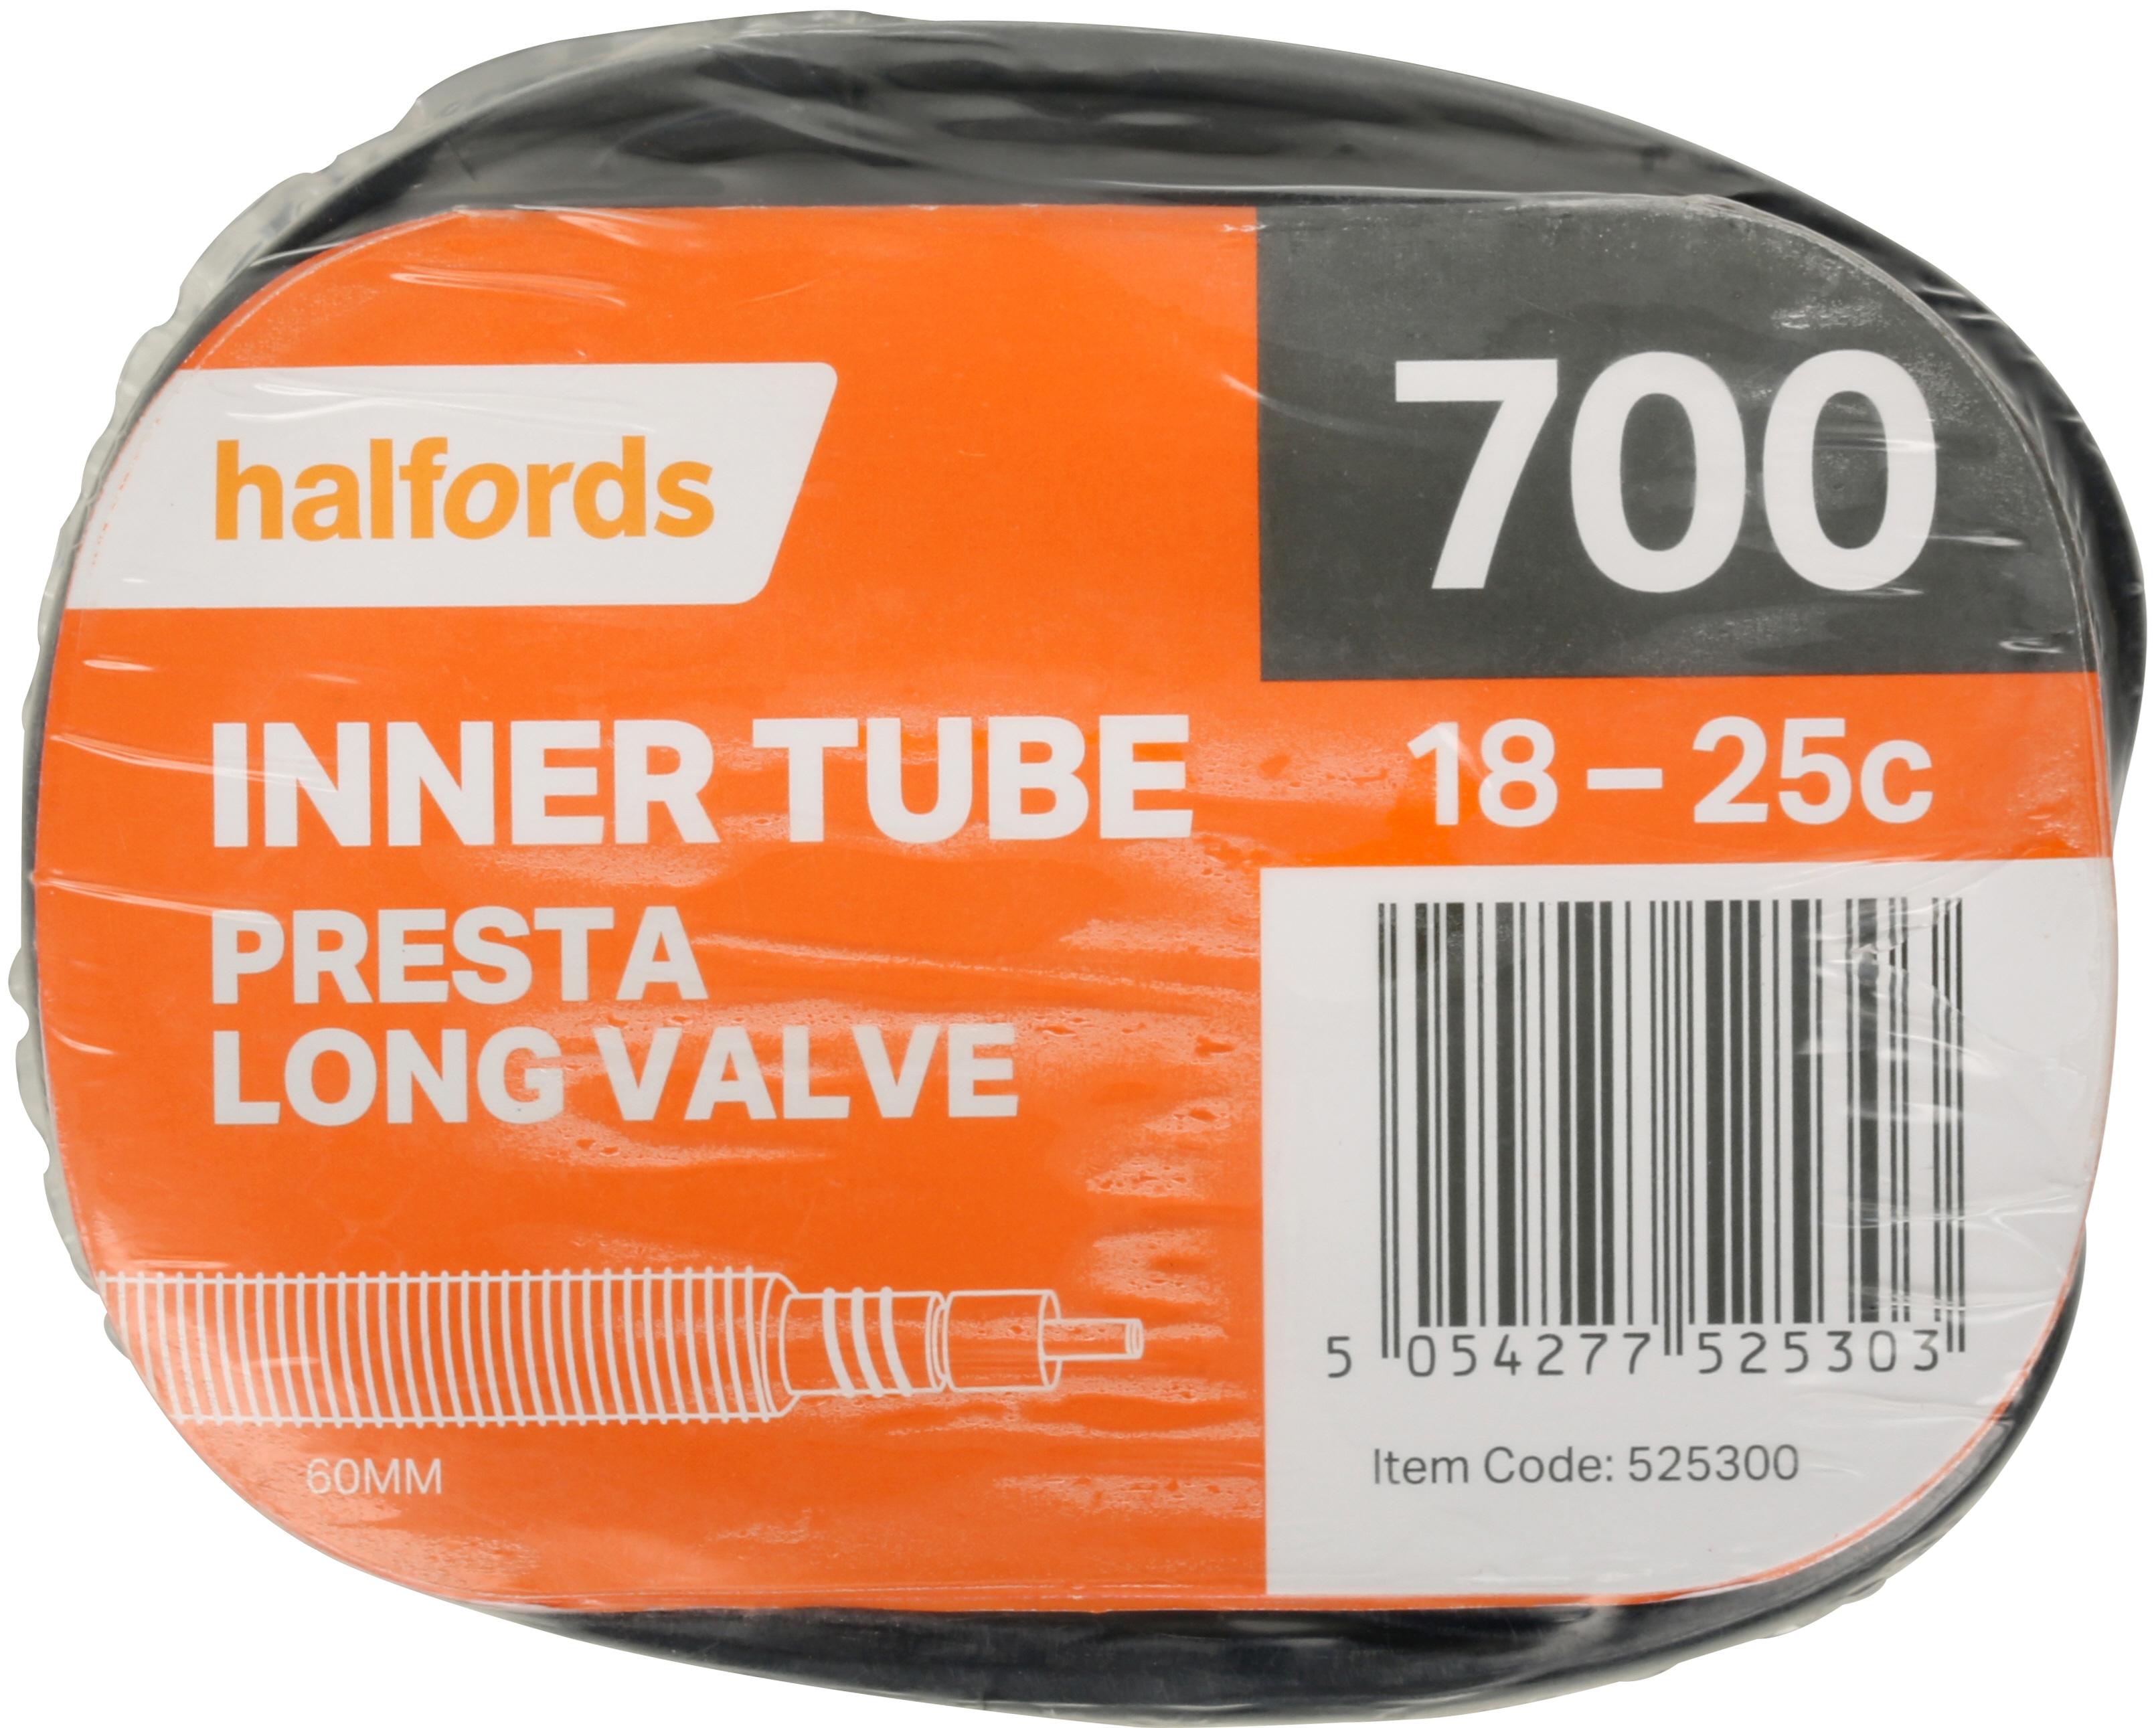 700 25c inner tube